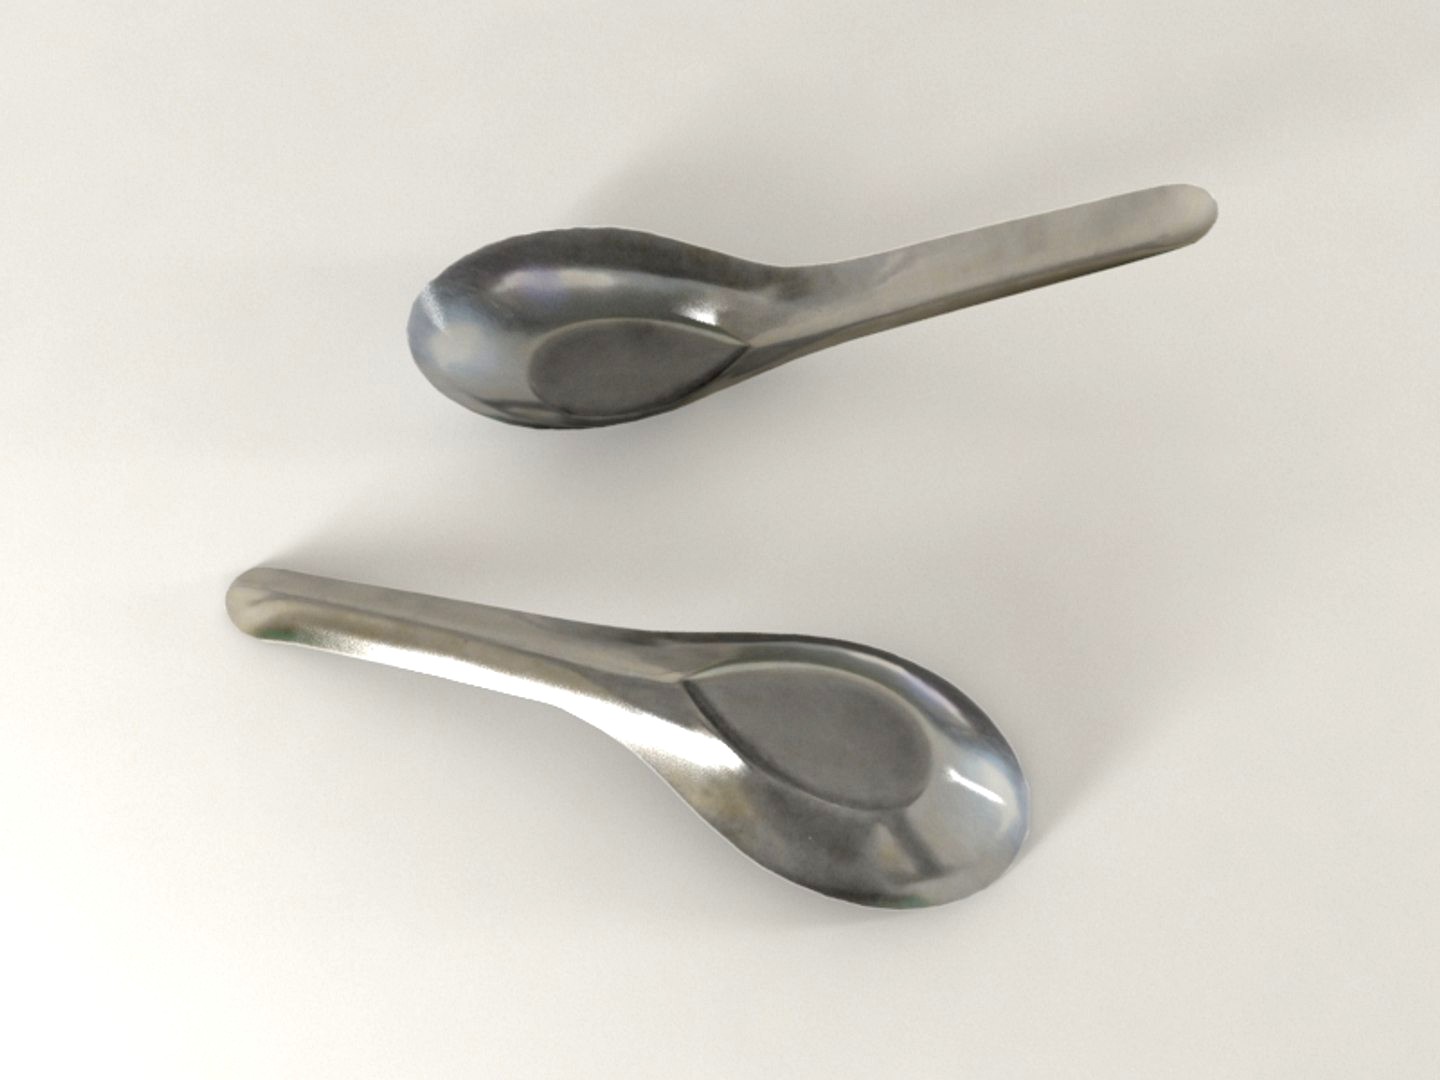 Steel spoon